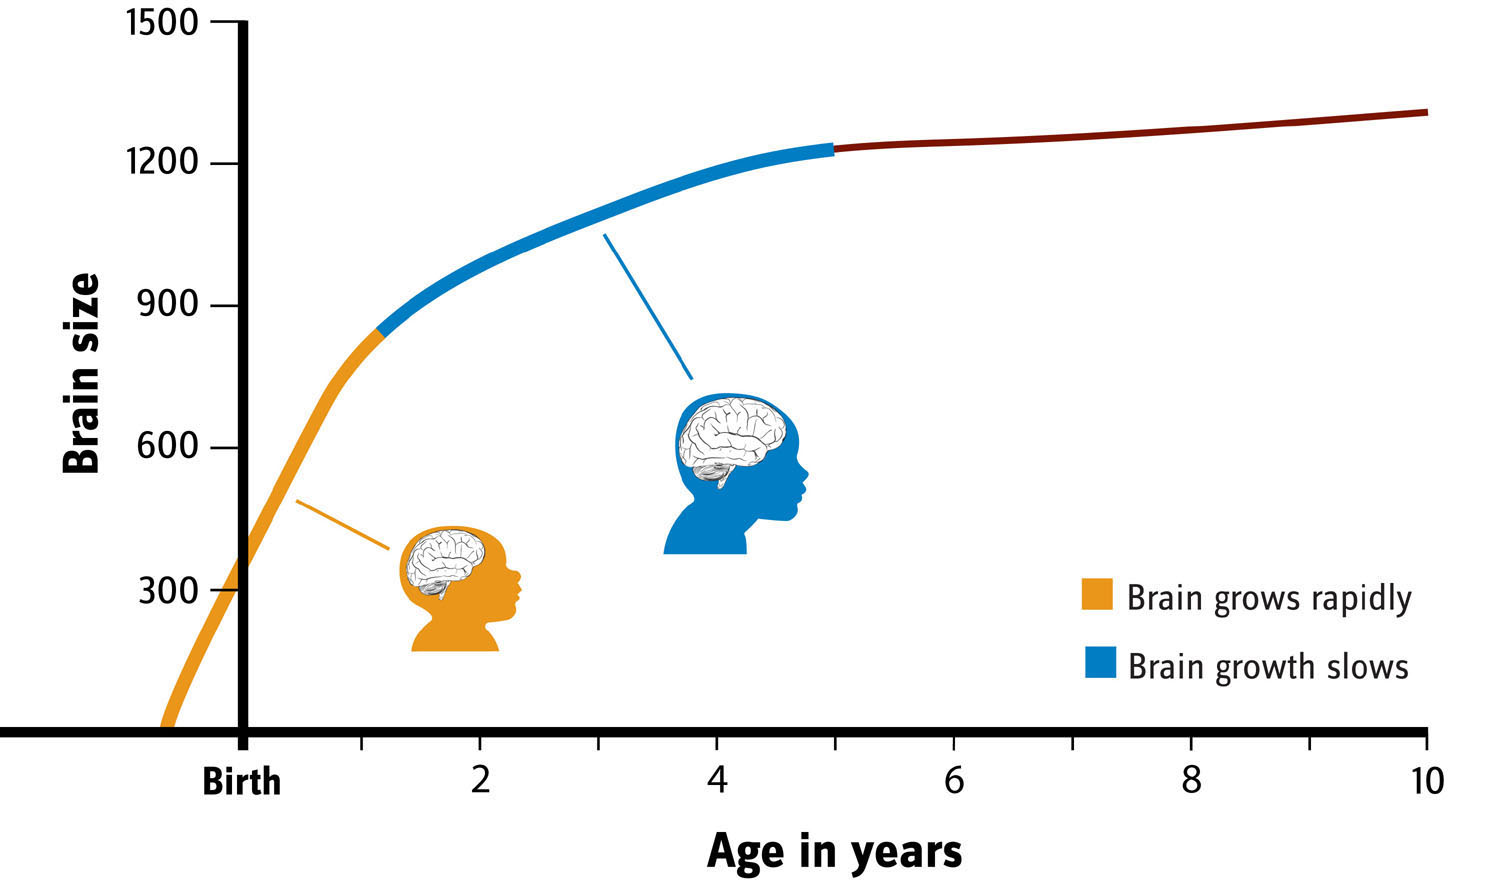 Brain Growth Chart